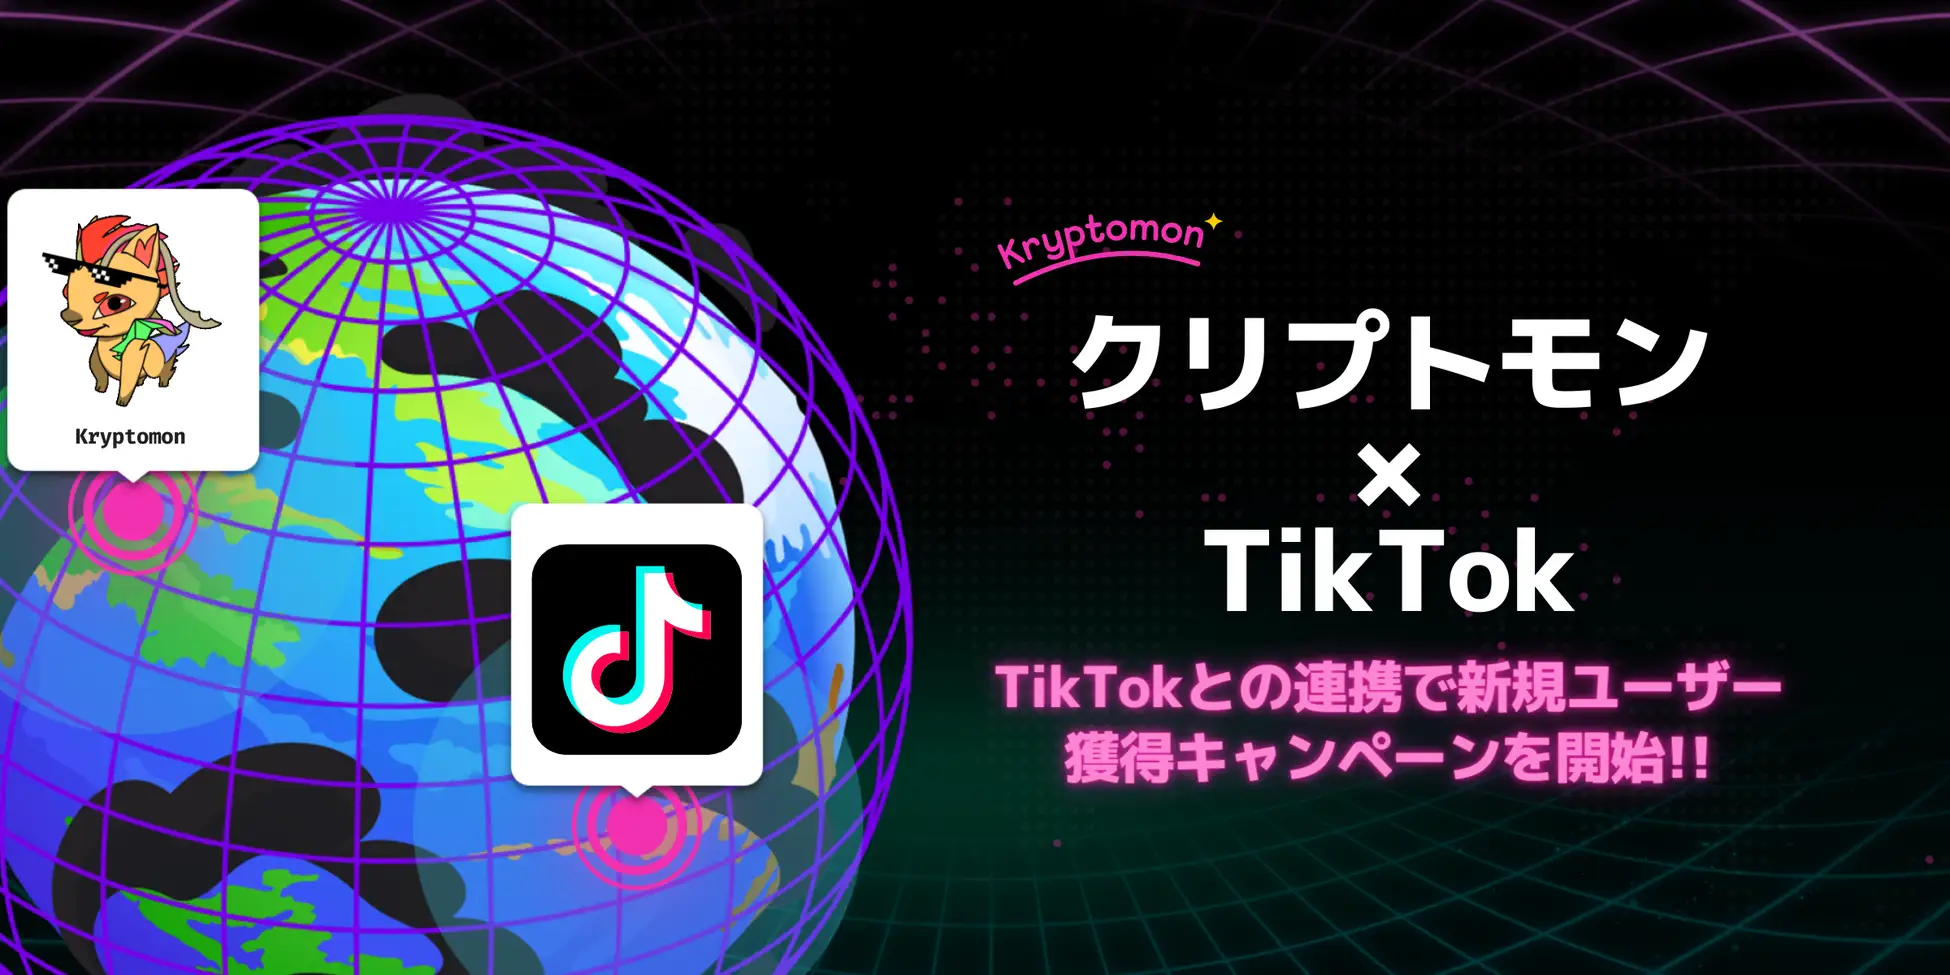 【TikTok】話題沸騰のNFTゲーム「クリプトモン」、TikTokとの連携で新規ユーザー獲得キャンペーンを開始